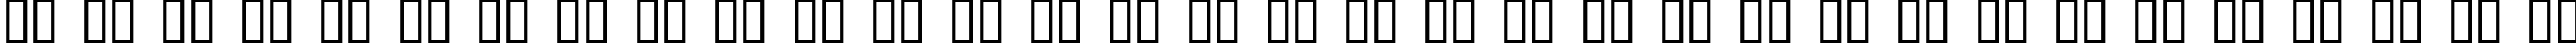 Пример написания русского алфавита шрифтом Albert Text Bold